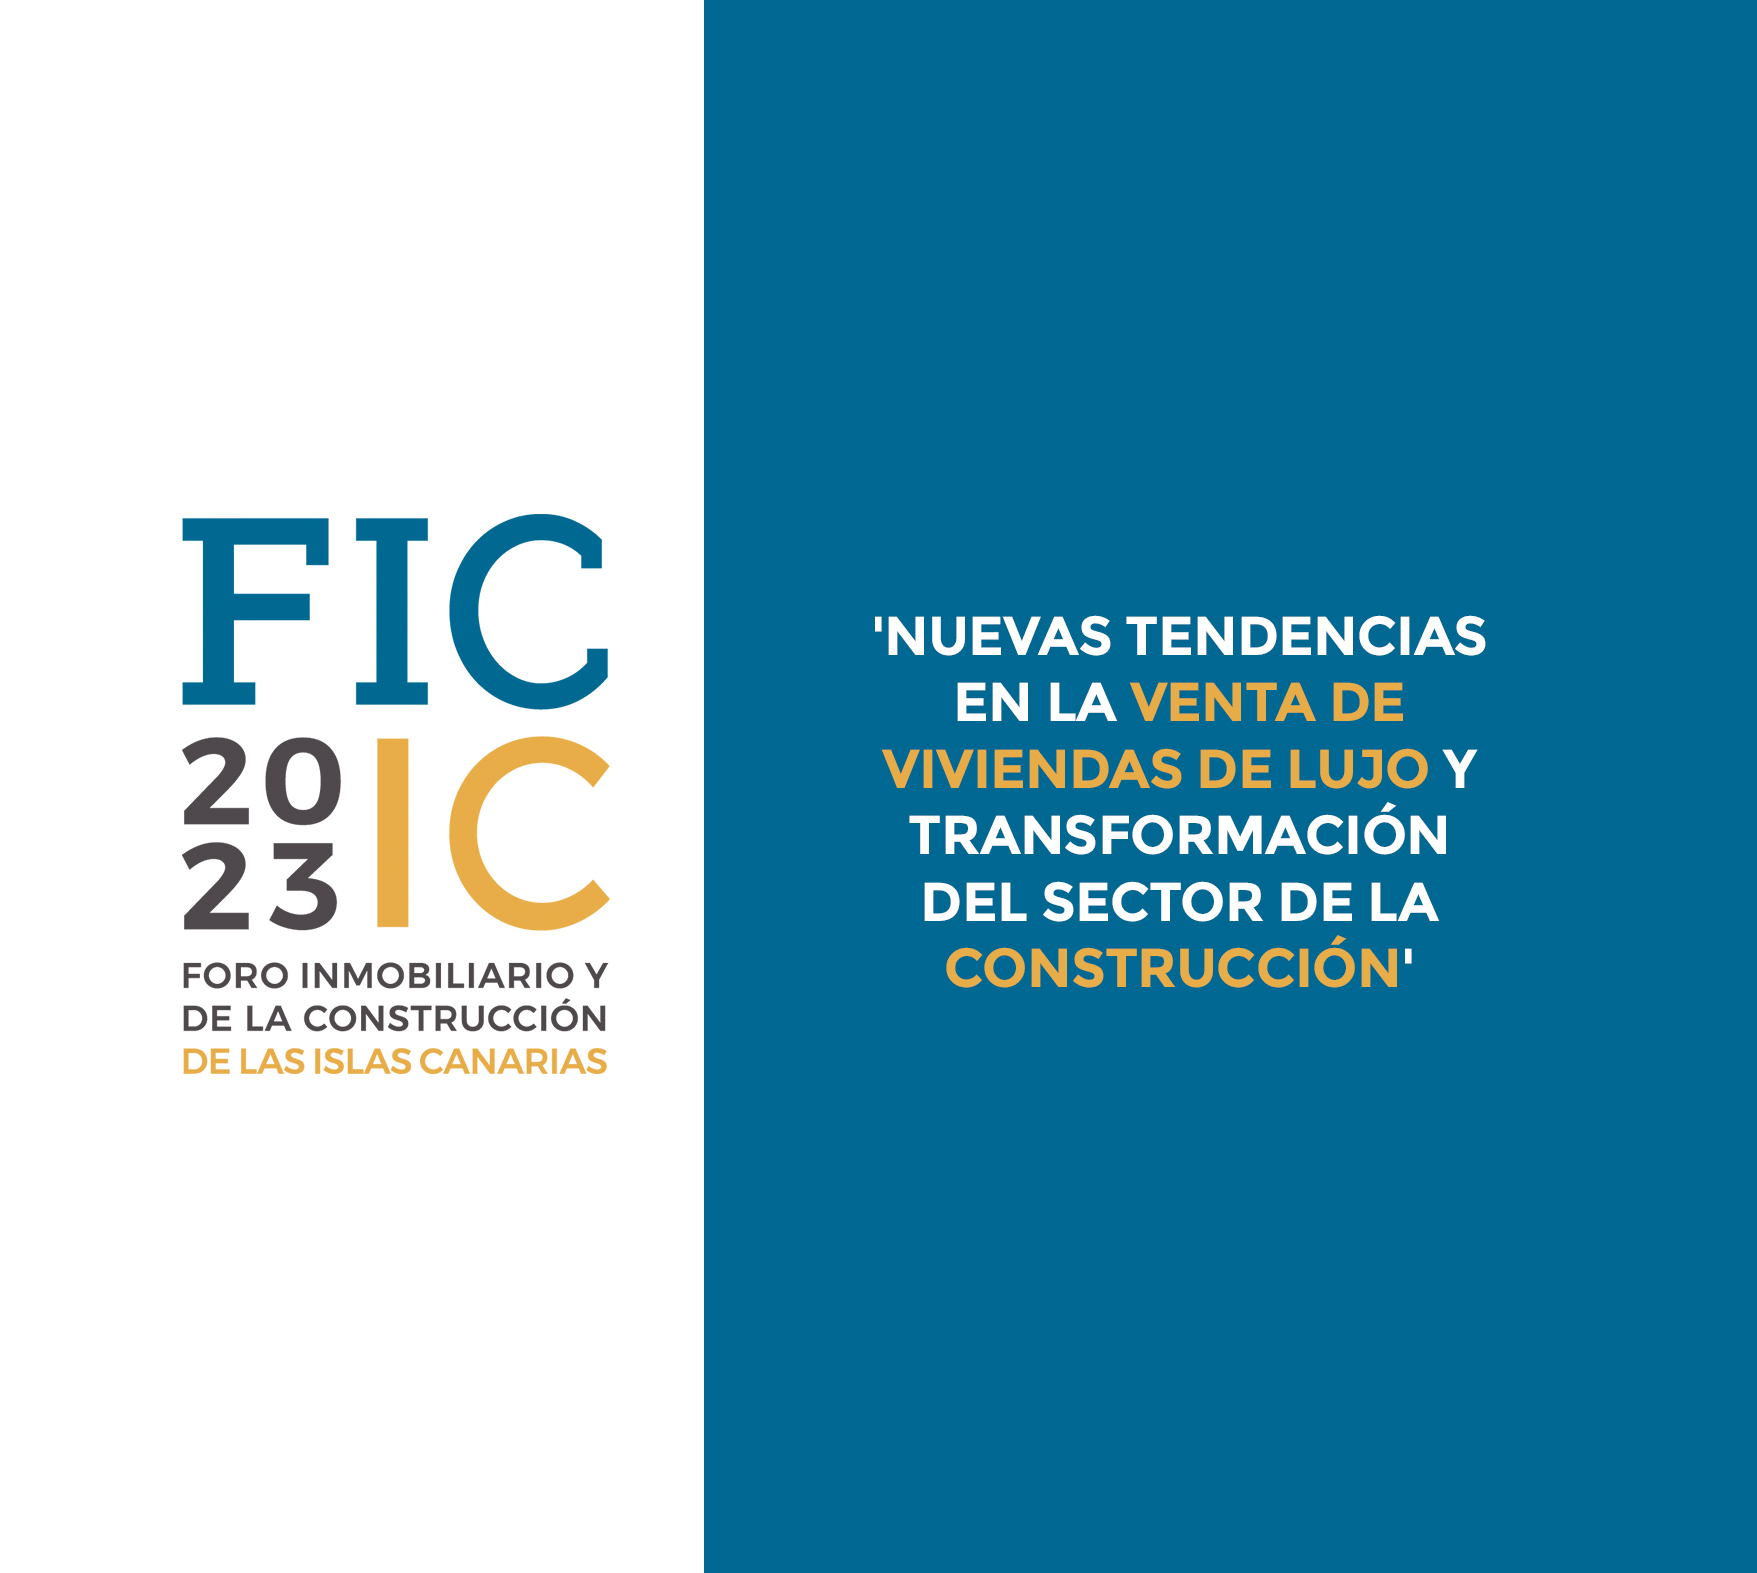 Nace un novedoso espacio que aúna el sector inmobiliario y el de la construcción en Canarias: FIC 2023